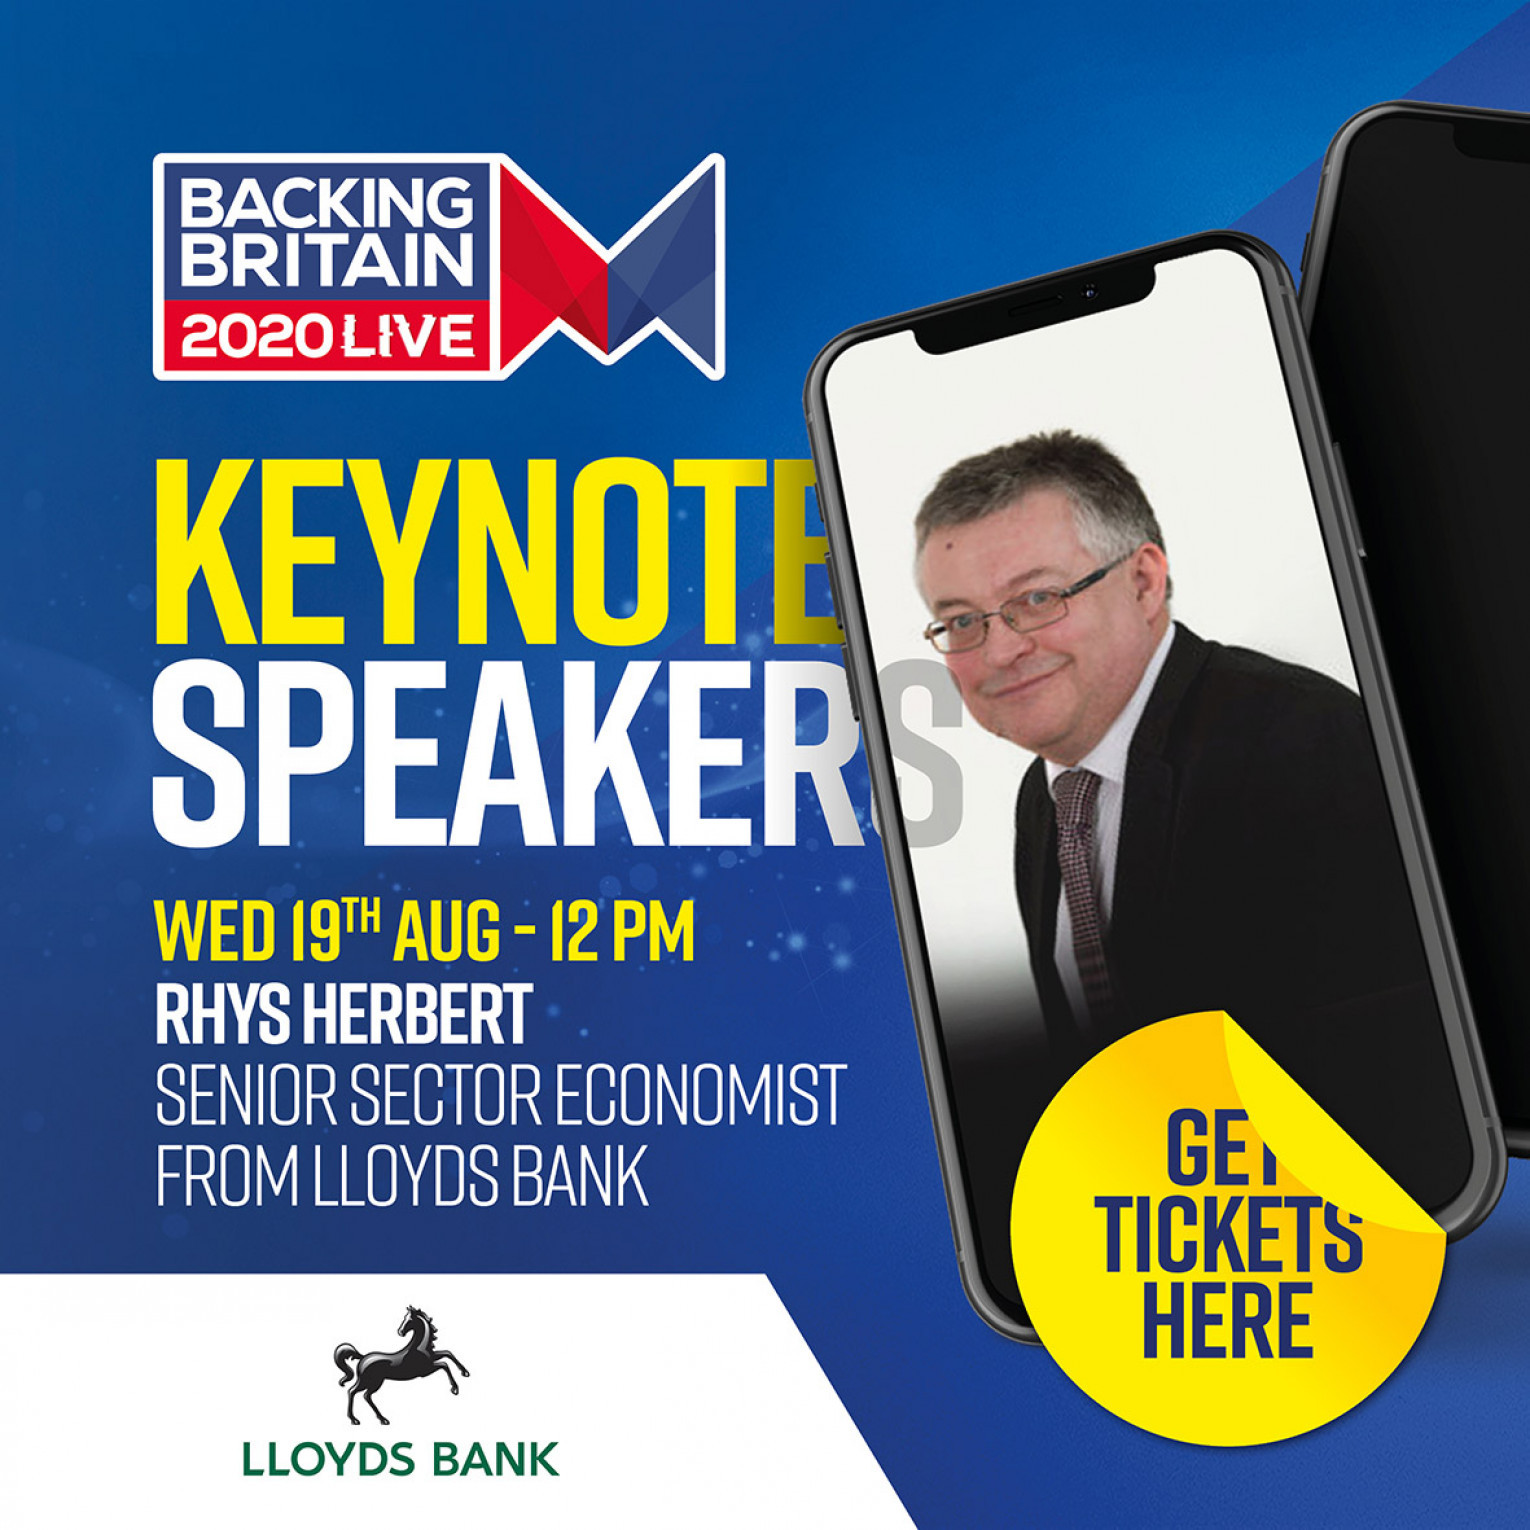 Keynote speaker - Rhys Herbert Senior Sector Economist for Lloyds Bank